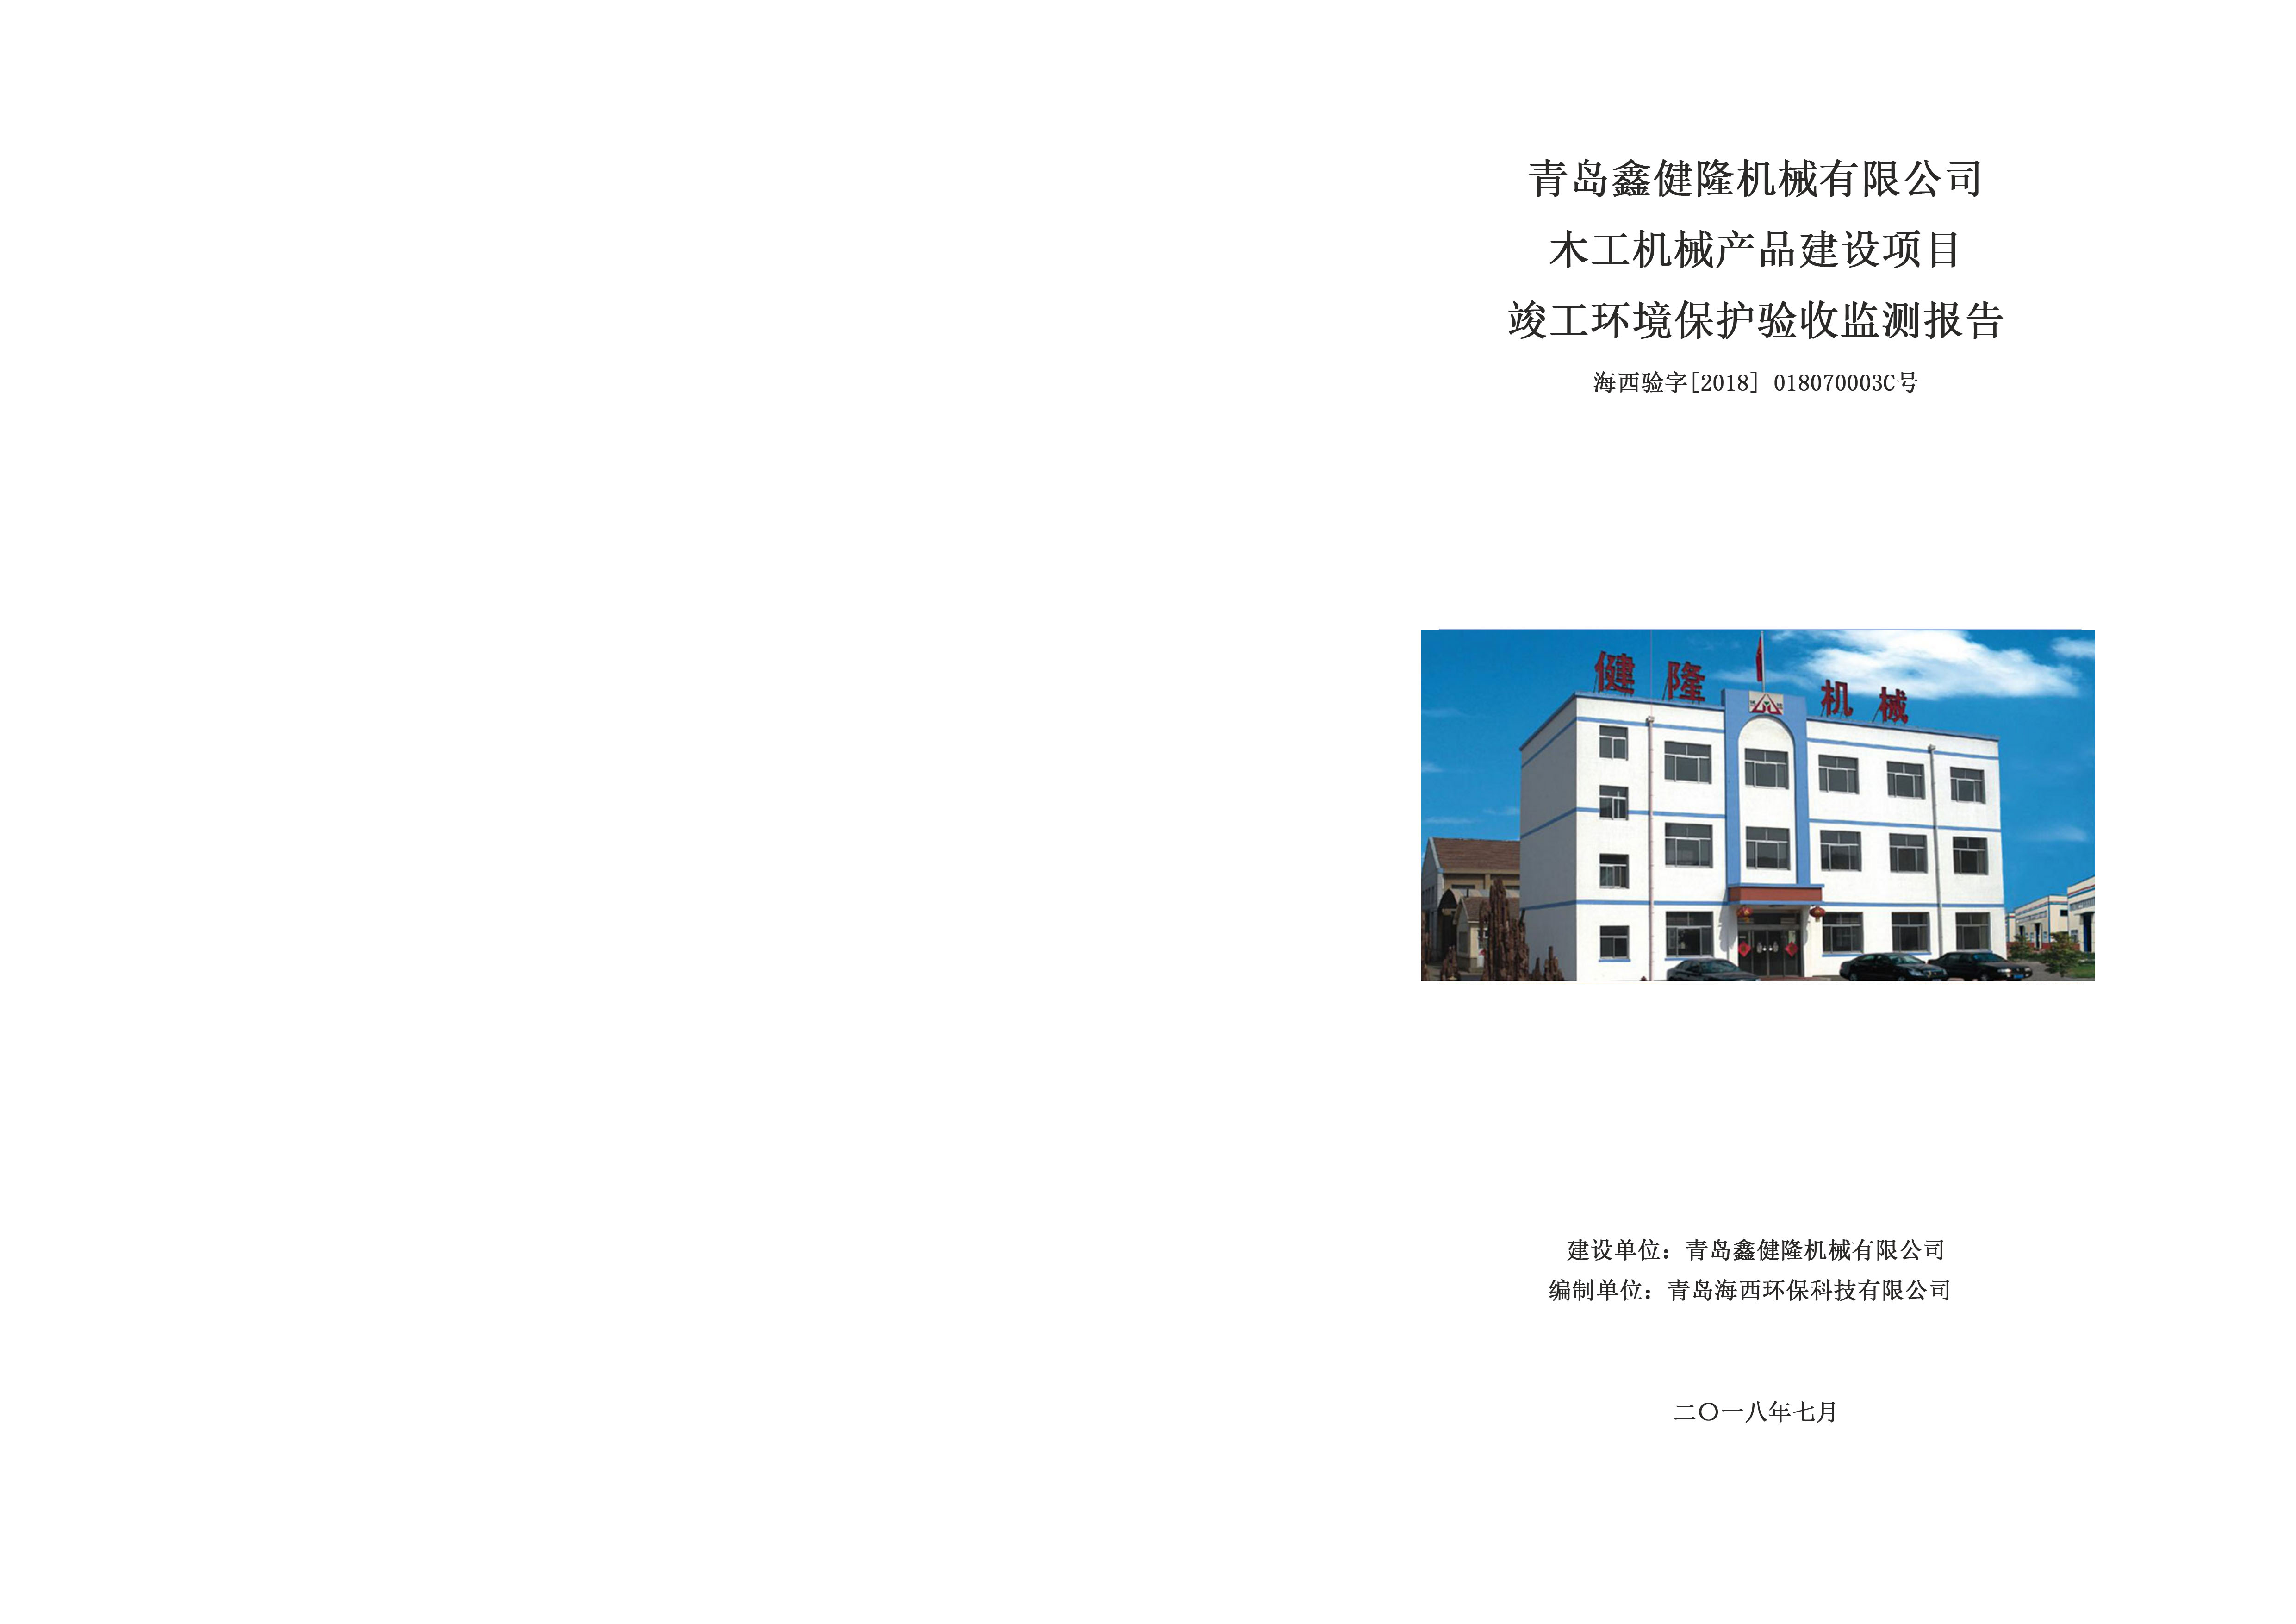 青岛鑫健隆机械有限公司 木工机械产品建设项目